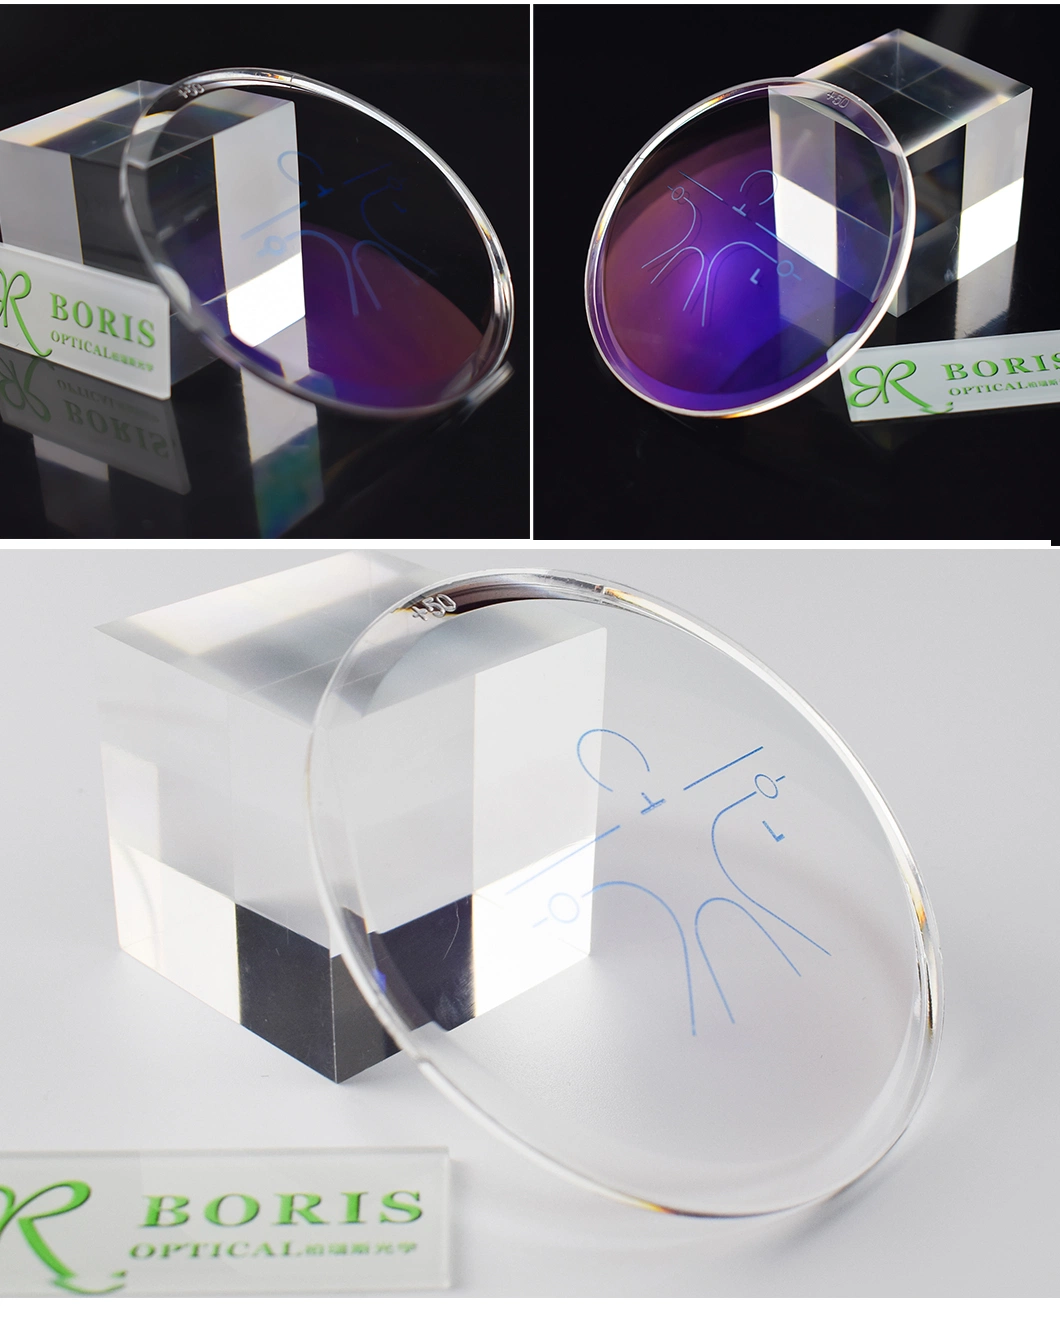 Spectacles Lens Index 1.591 Polycarbonate Progressive Hmc EMI Optical Lenses